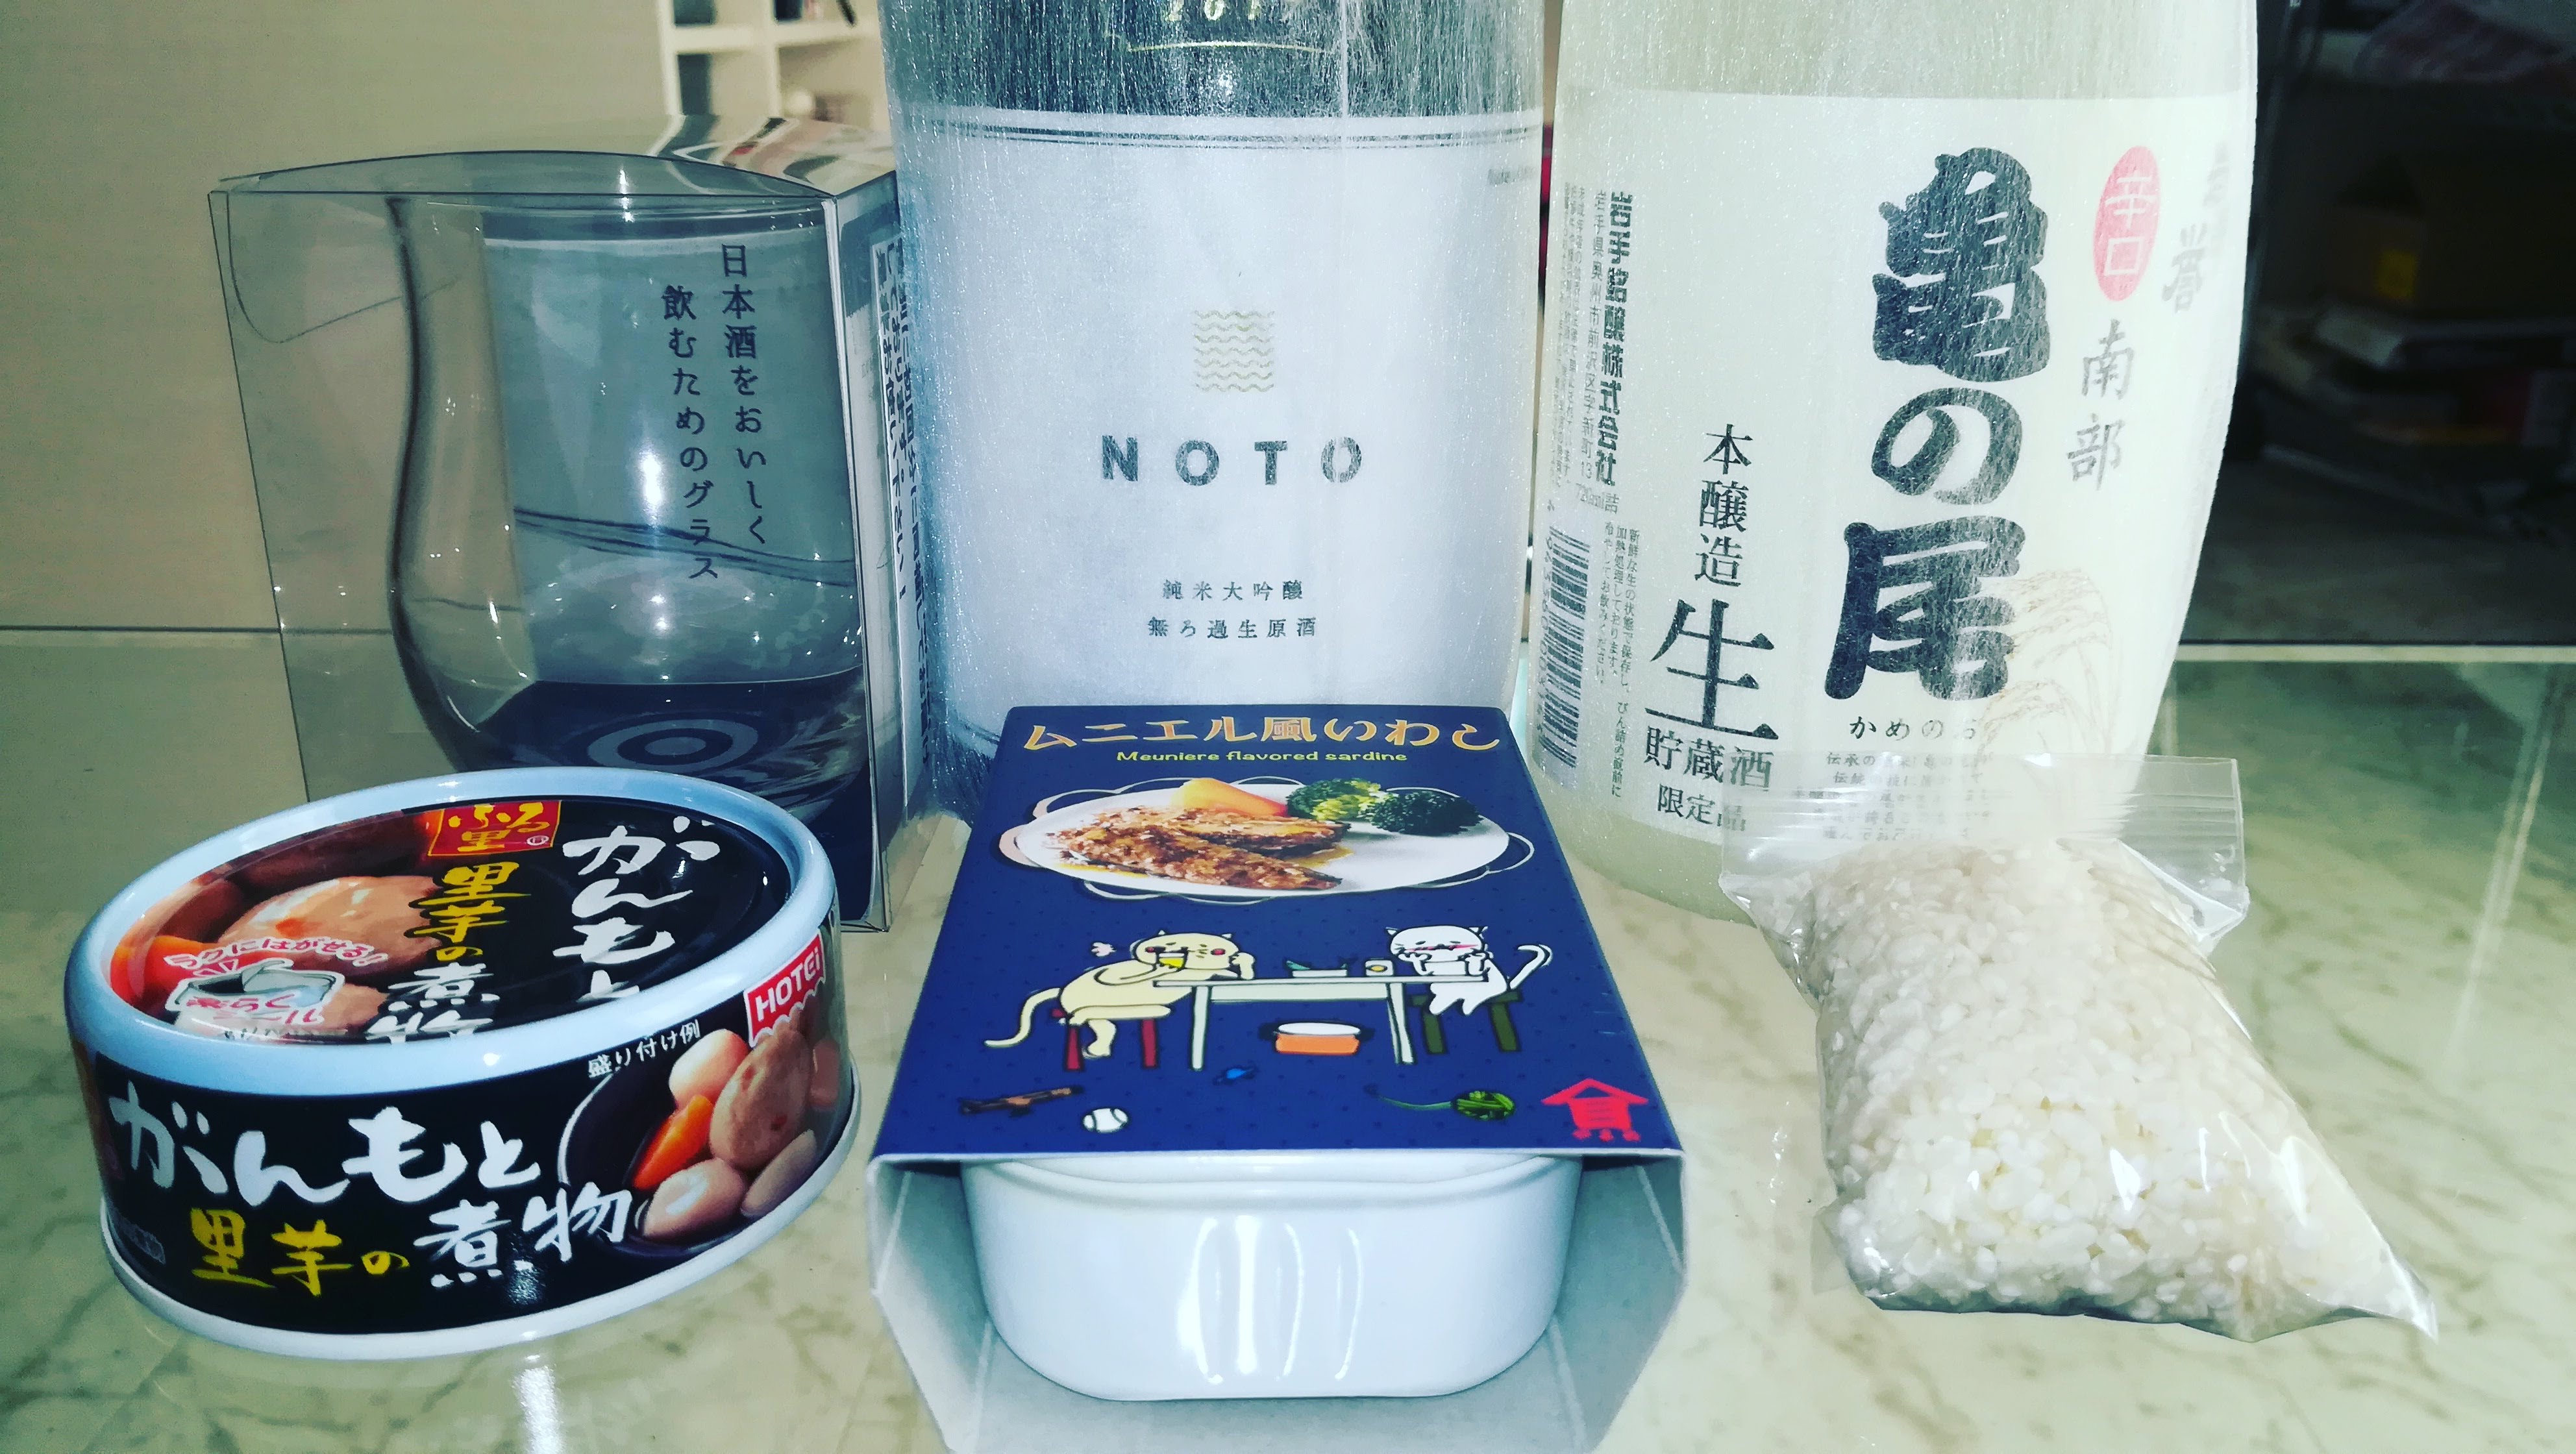 日本酒宅配サービス「saketaku」が凄くいいサービスなのではじめてみました　NOTO・亀の尾　前編